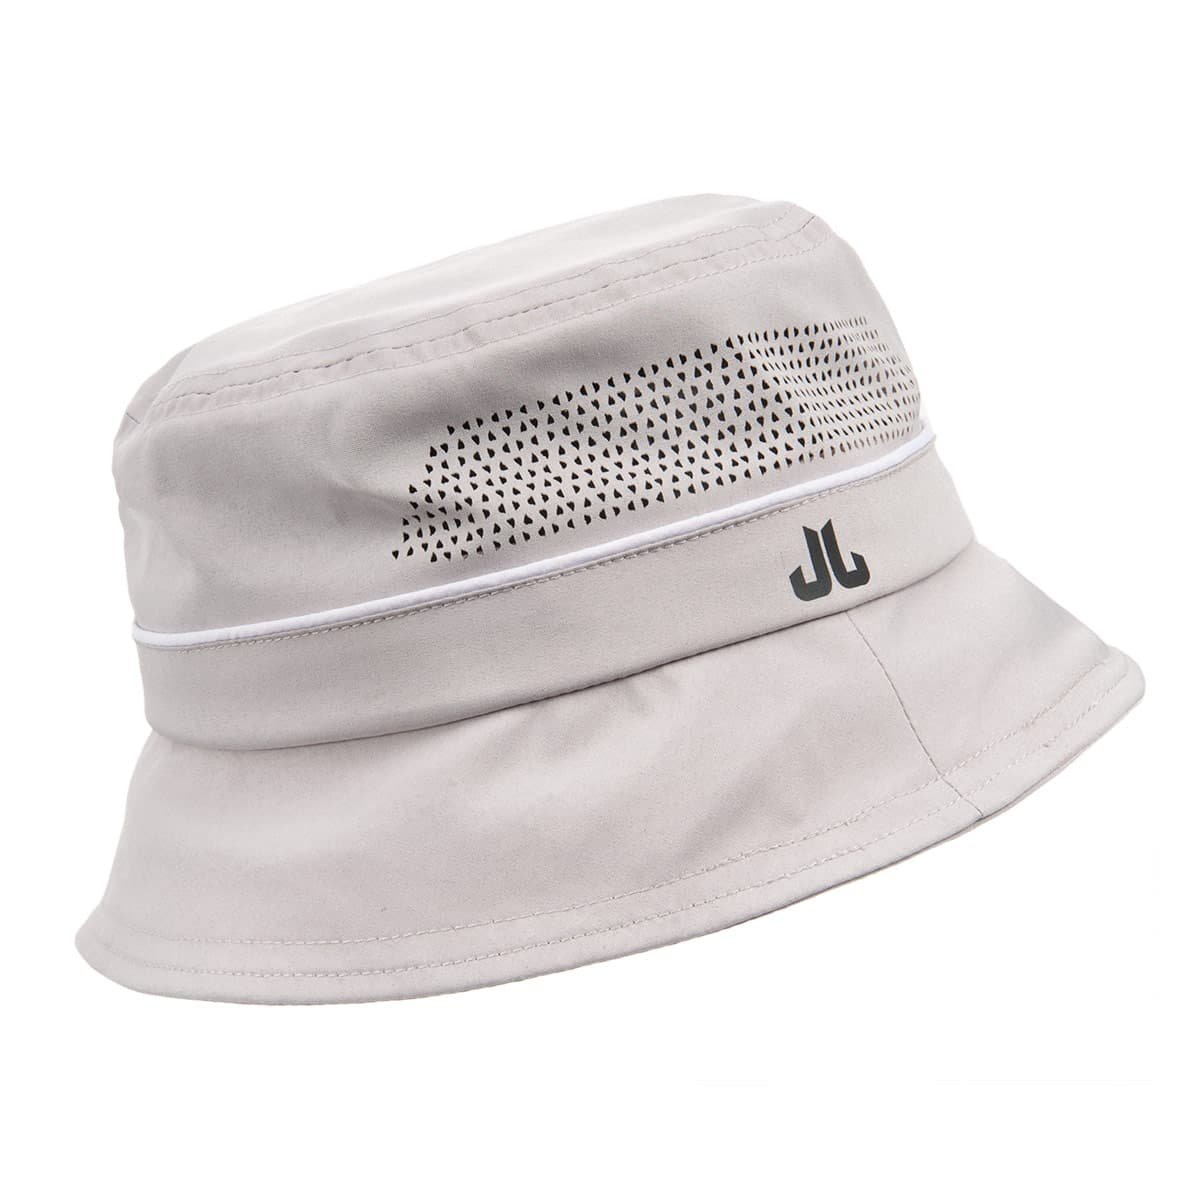 https://pic.hutstuebele.com/JAIL-JAM-bucket-hat-UV-protection-50-.47770a.jpg